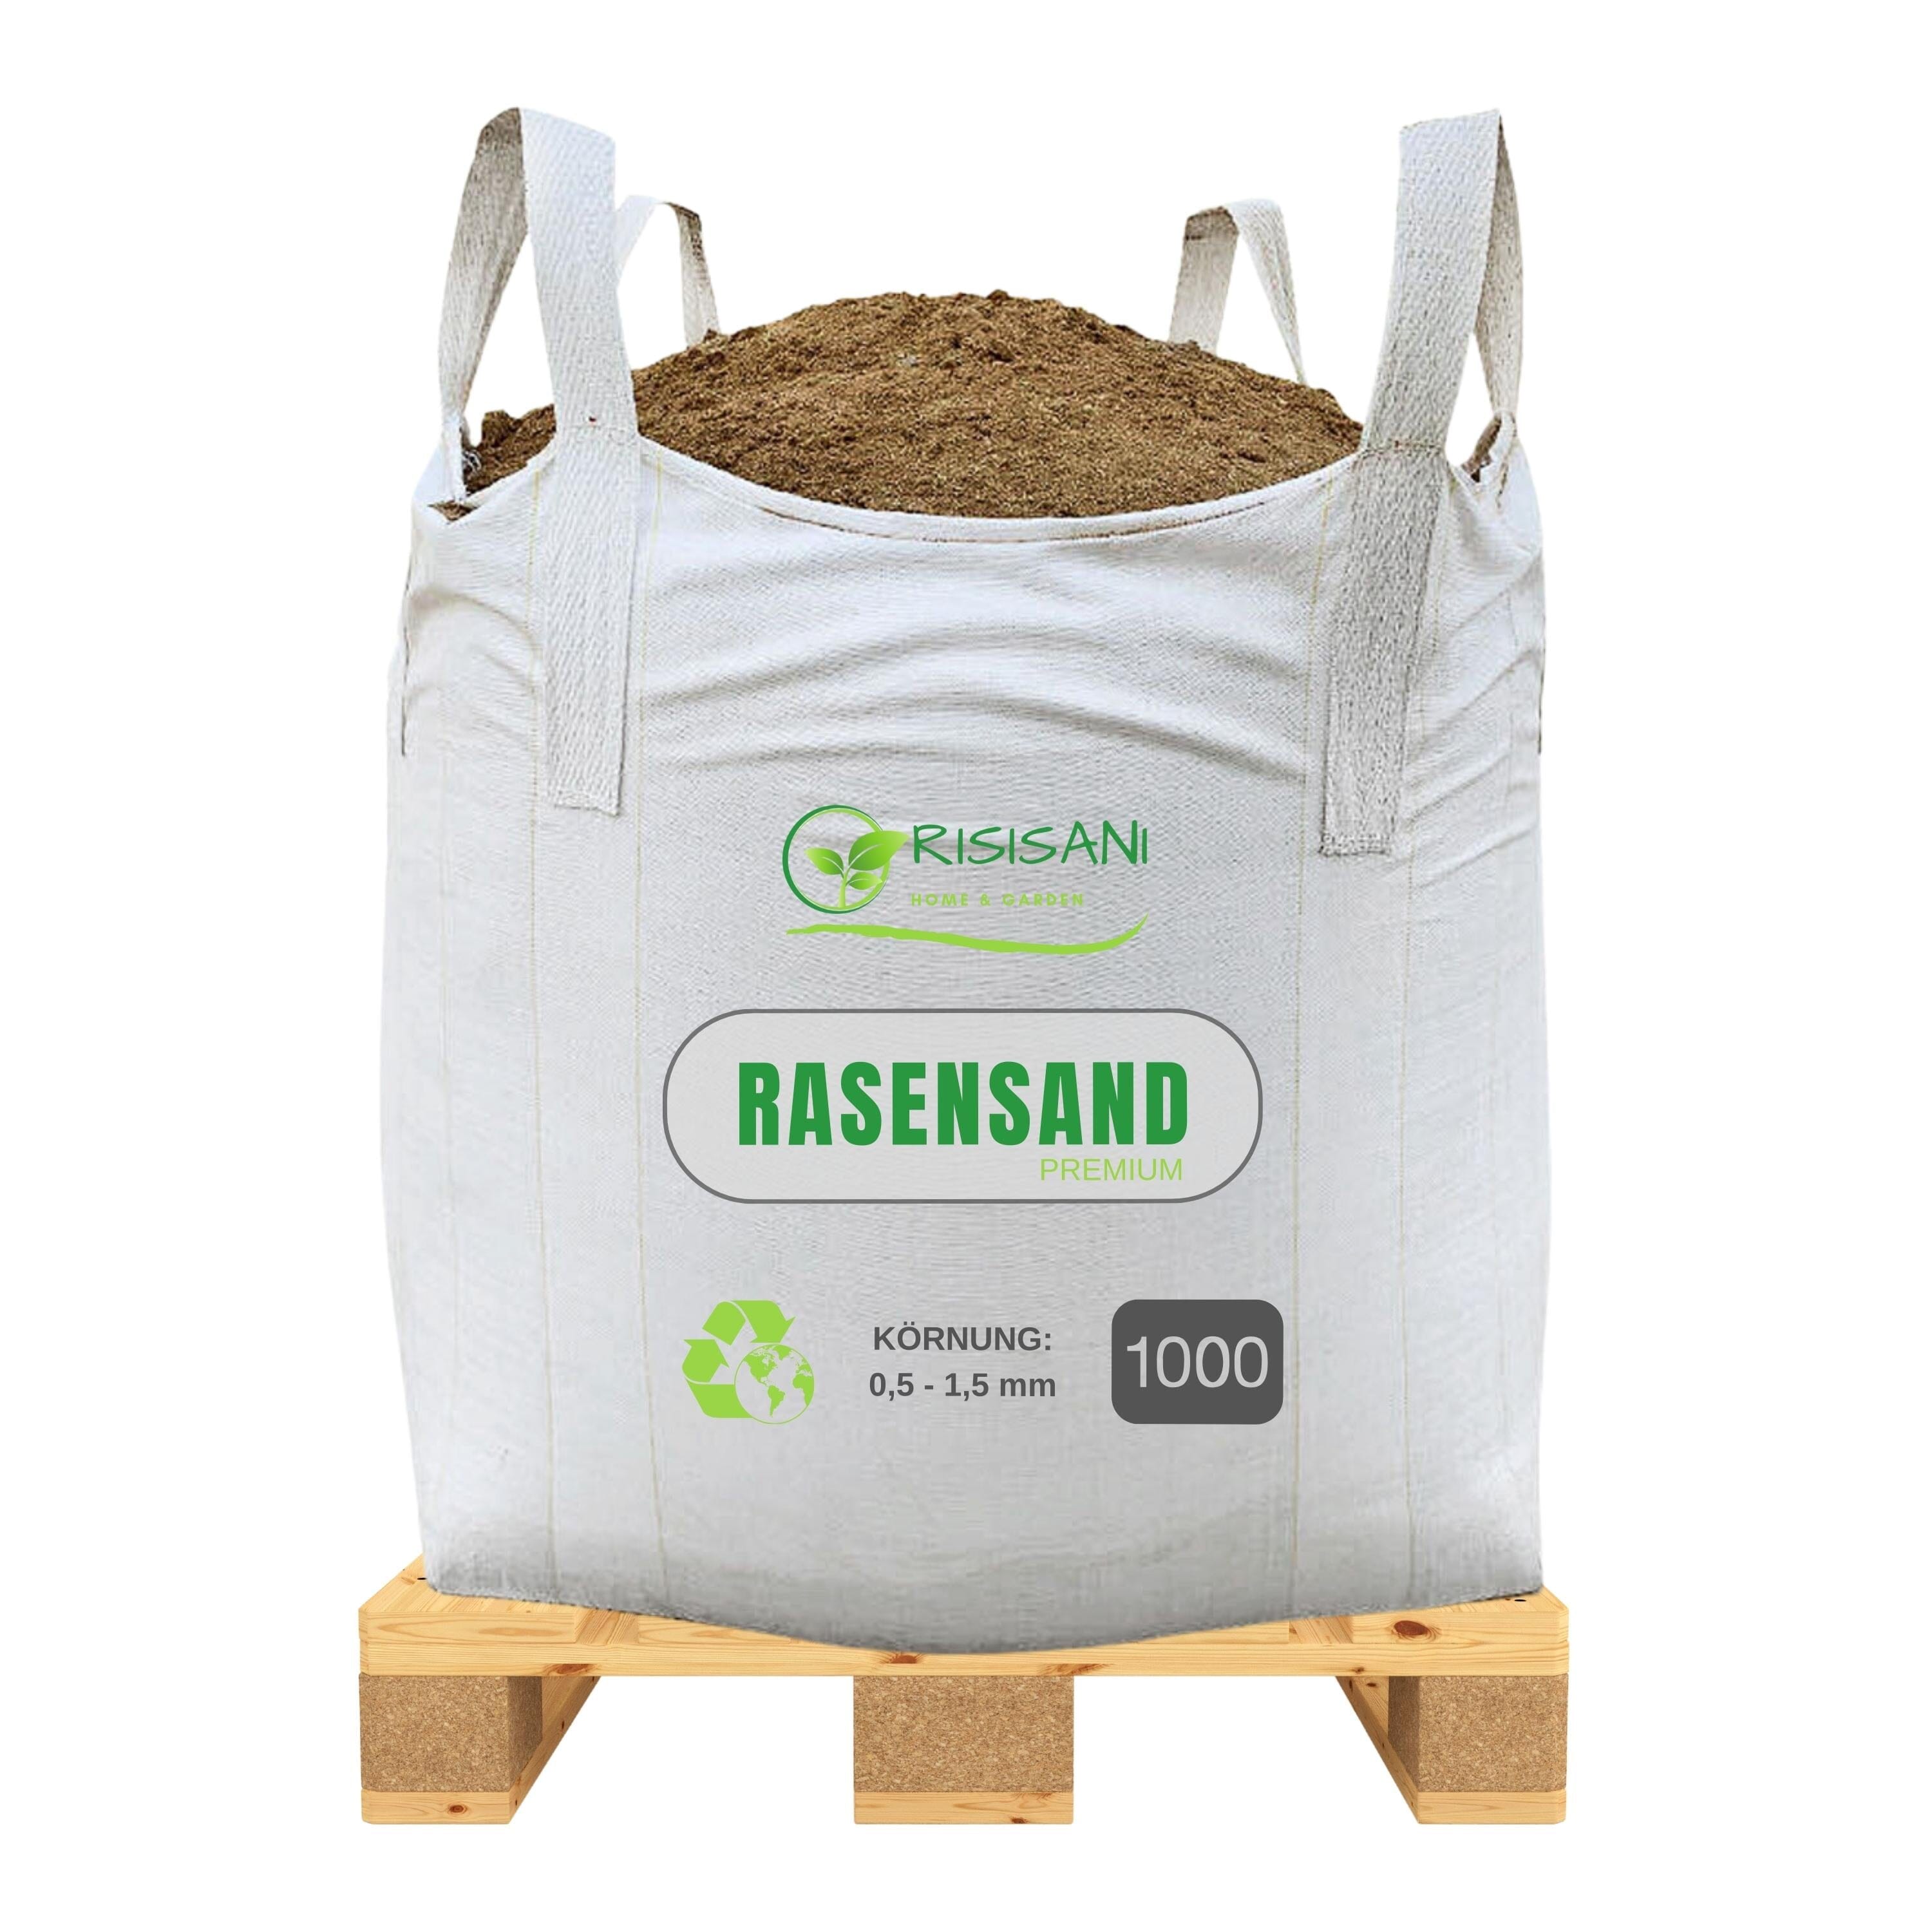 RISISANI Premium Rasensand 1000 kg | Quarzsand mit Körnung 0,5-1,5 mm RISISANI